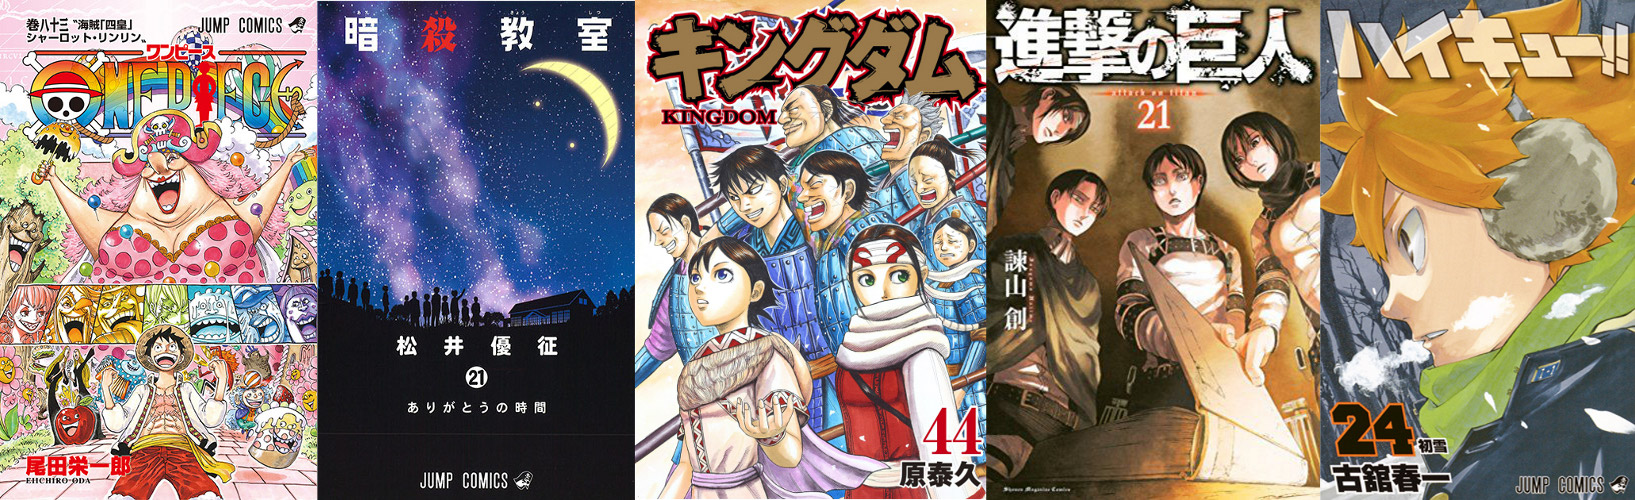 Top Oricon manga 2016 - Meilleures ventes au Japon par série